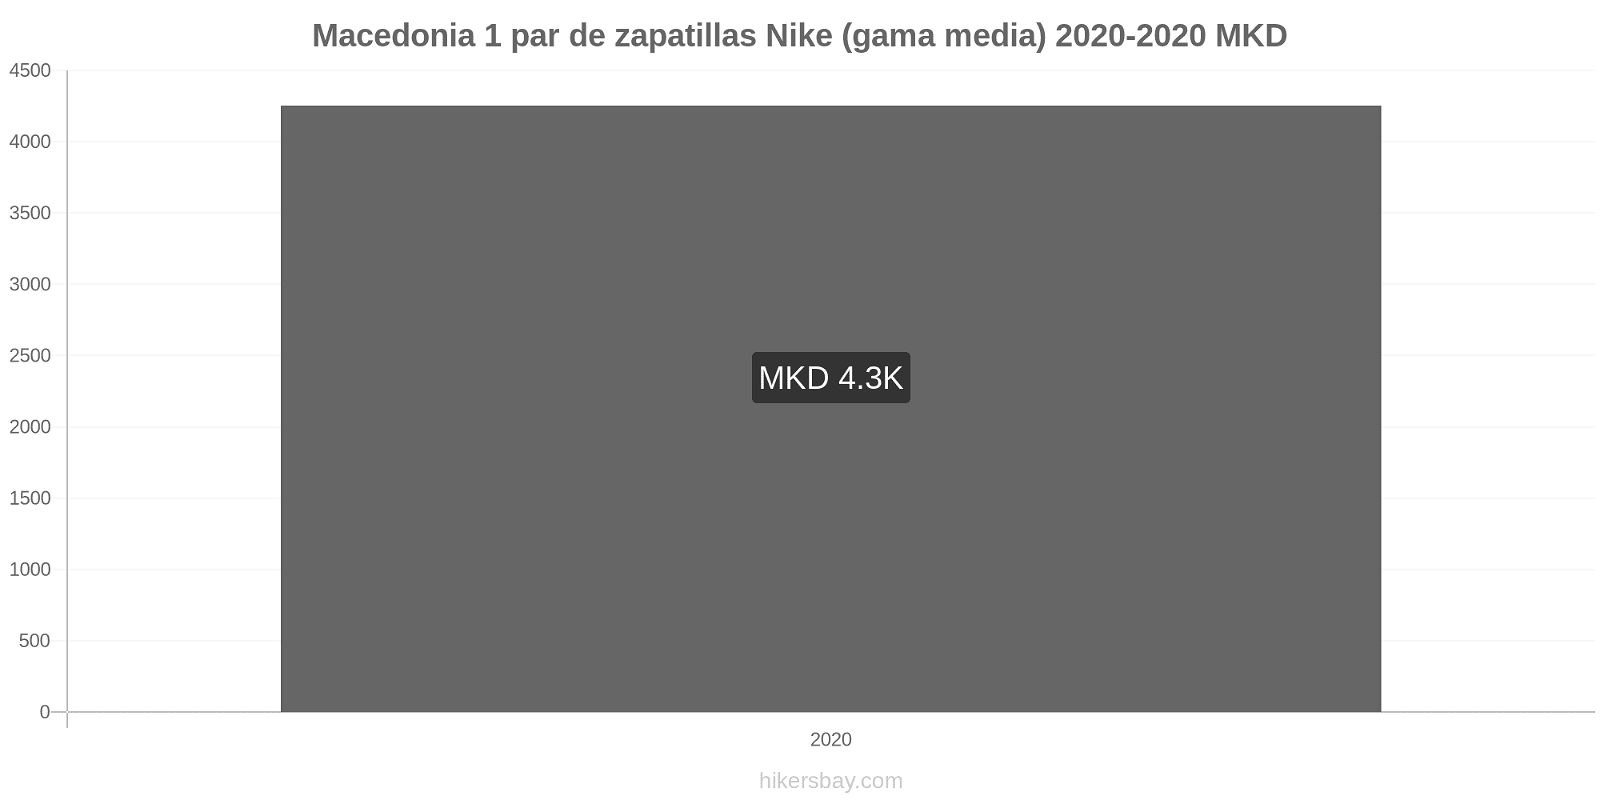 Macedonia cambios de precios 1 par de zapatillas Nike (gama media) hikersbay.com